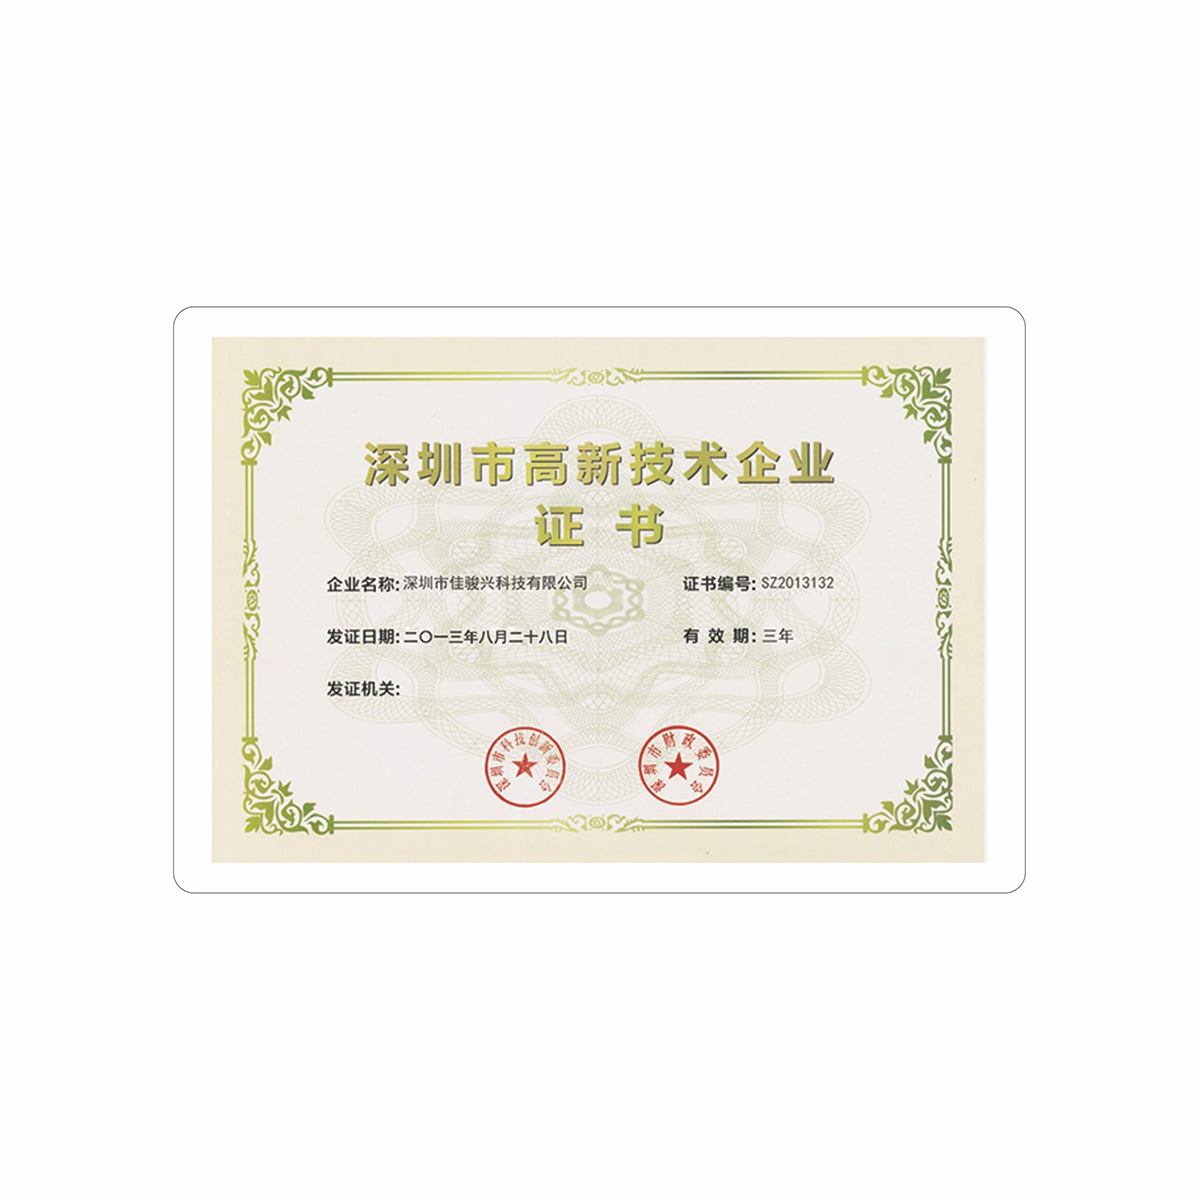  深圳市高新技术企业证书